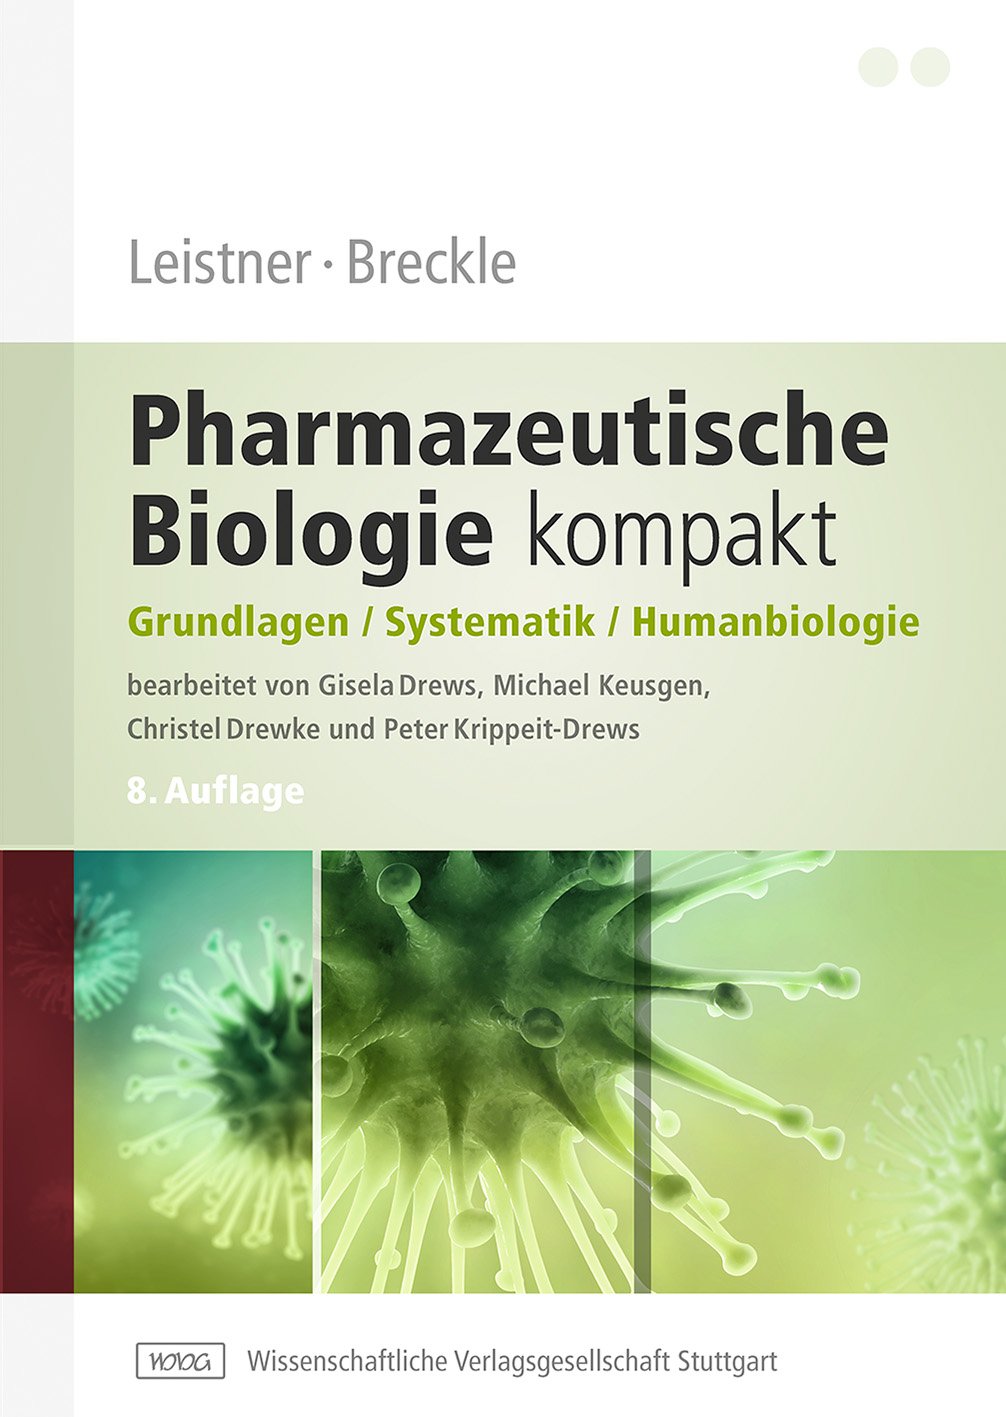 Leistner / Breckle – Pharmazeutische Biologie kompakt